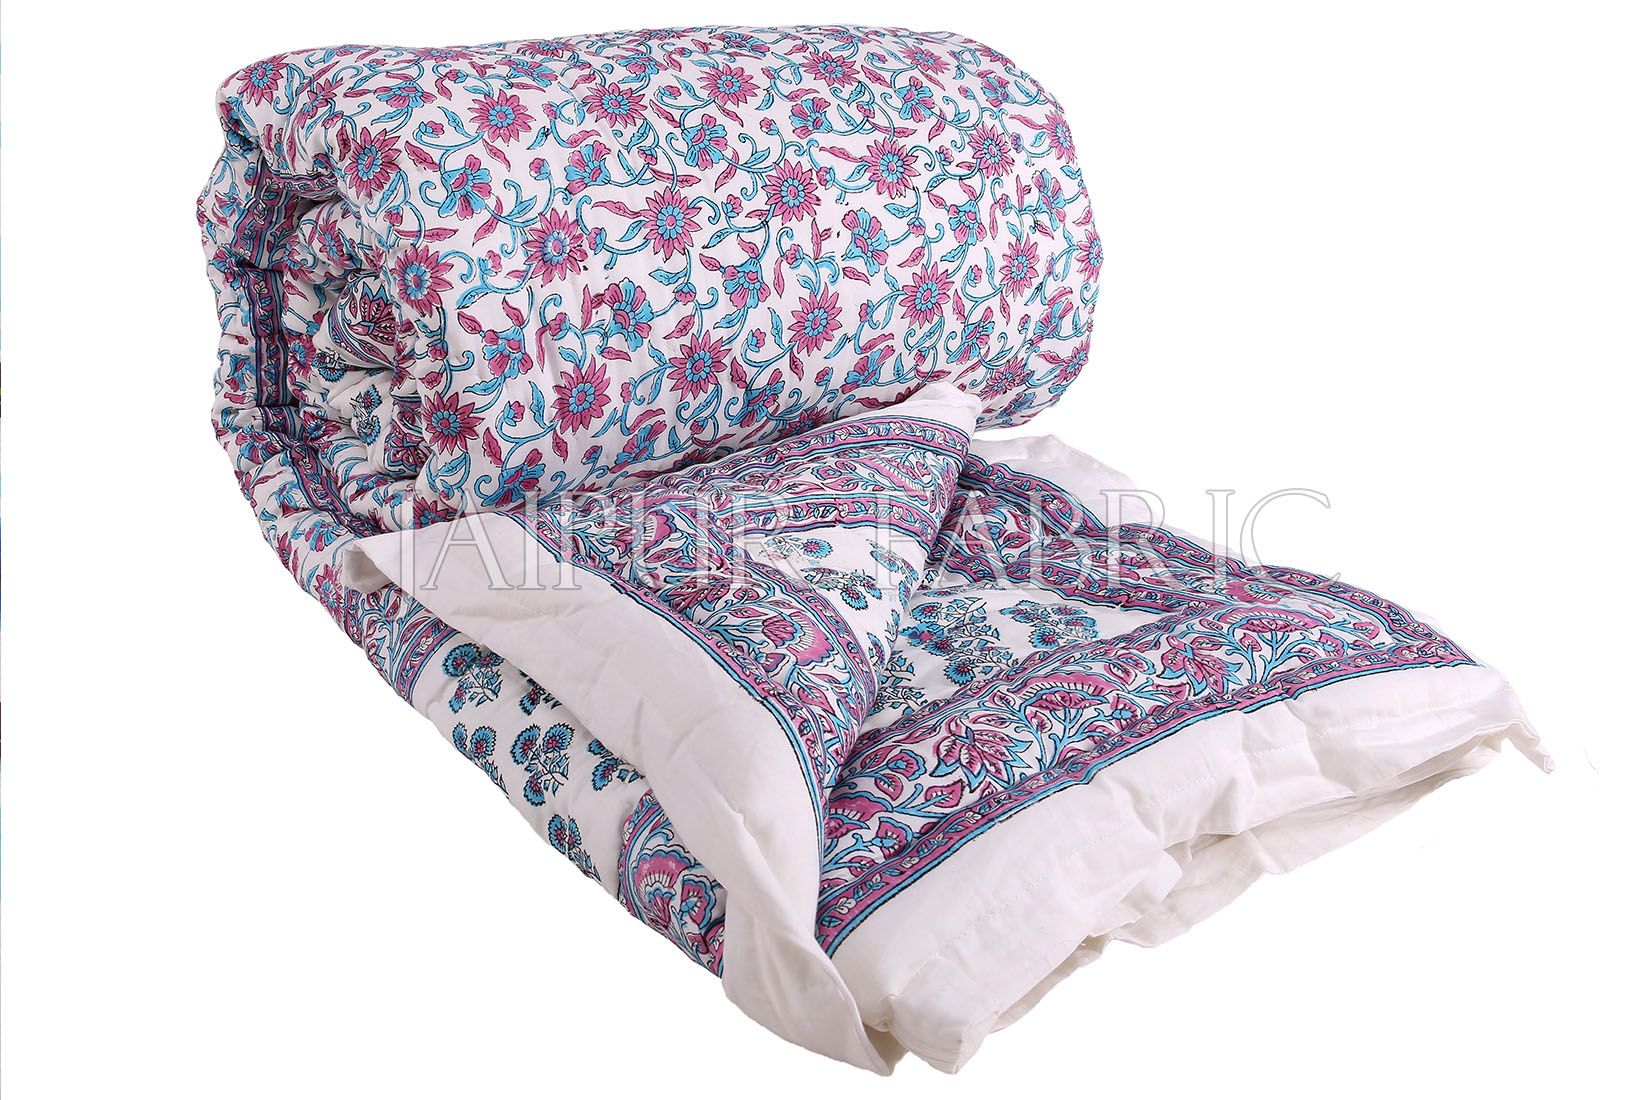 White Base Purple Blue Floral Print Cotton Double Bed Quilt